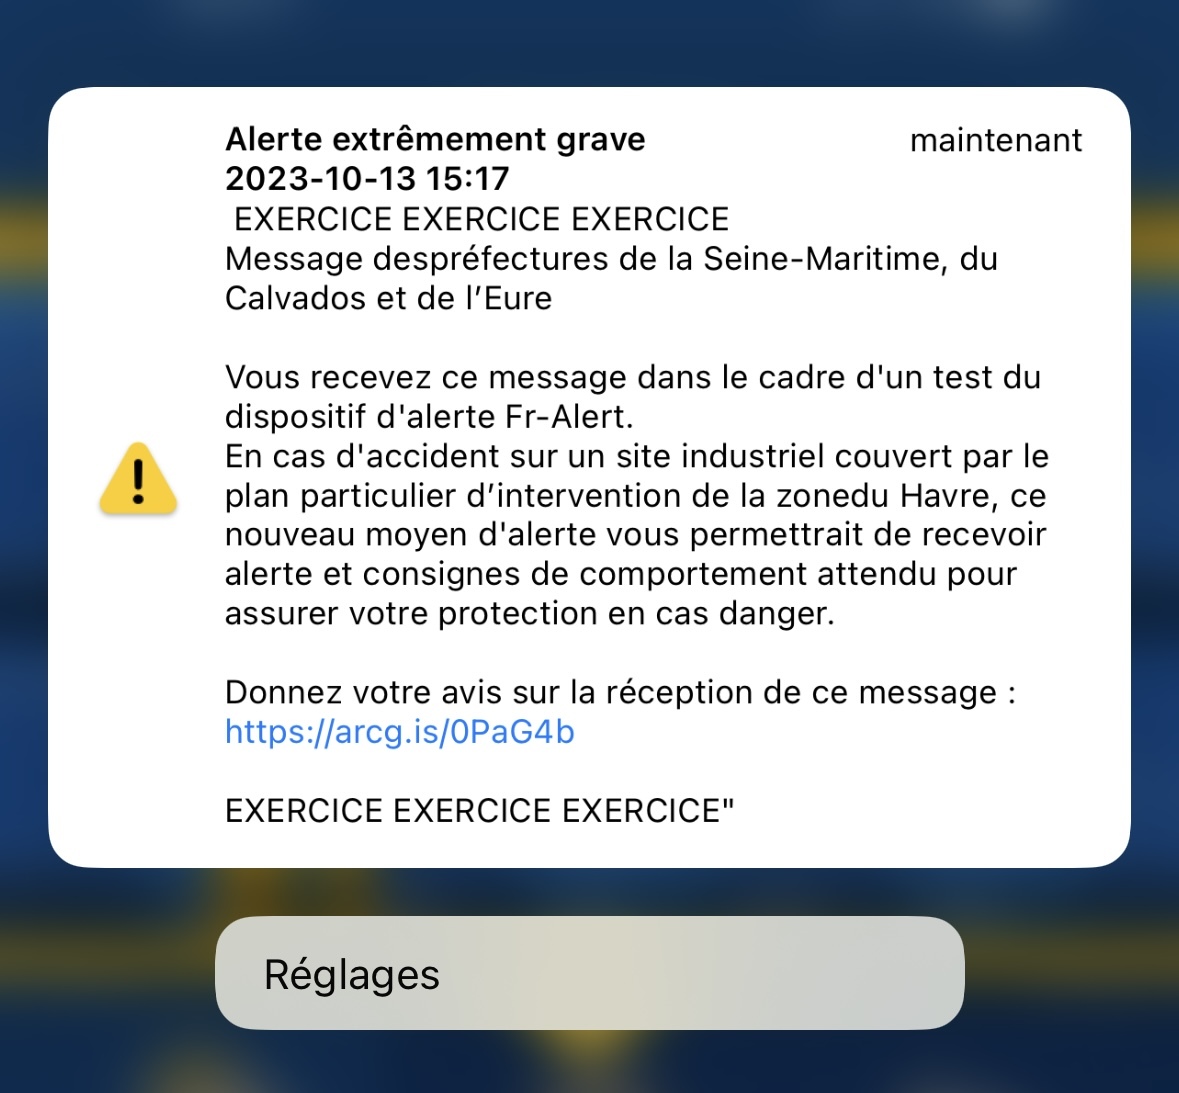 FR-Alert en test à Paris sur vos smartphones (de février à avril) ! #JOParis